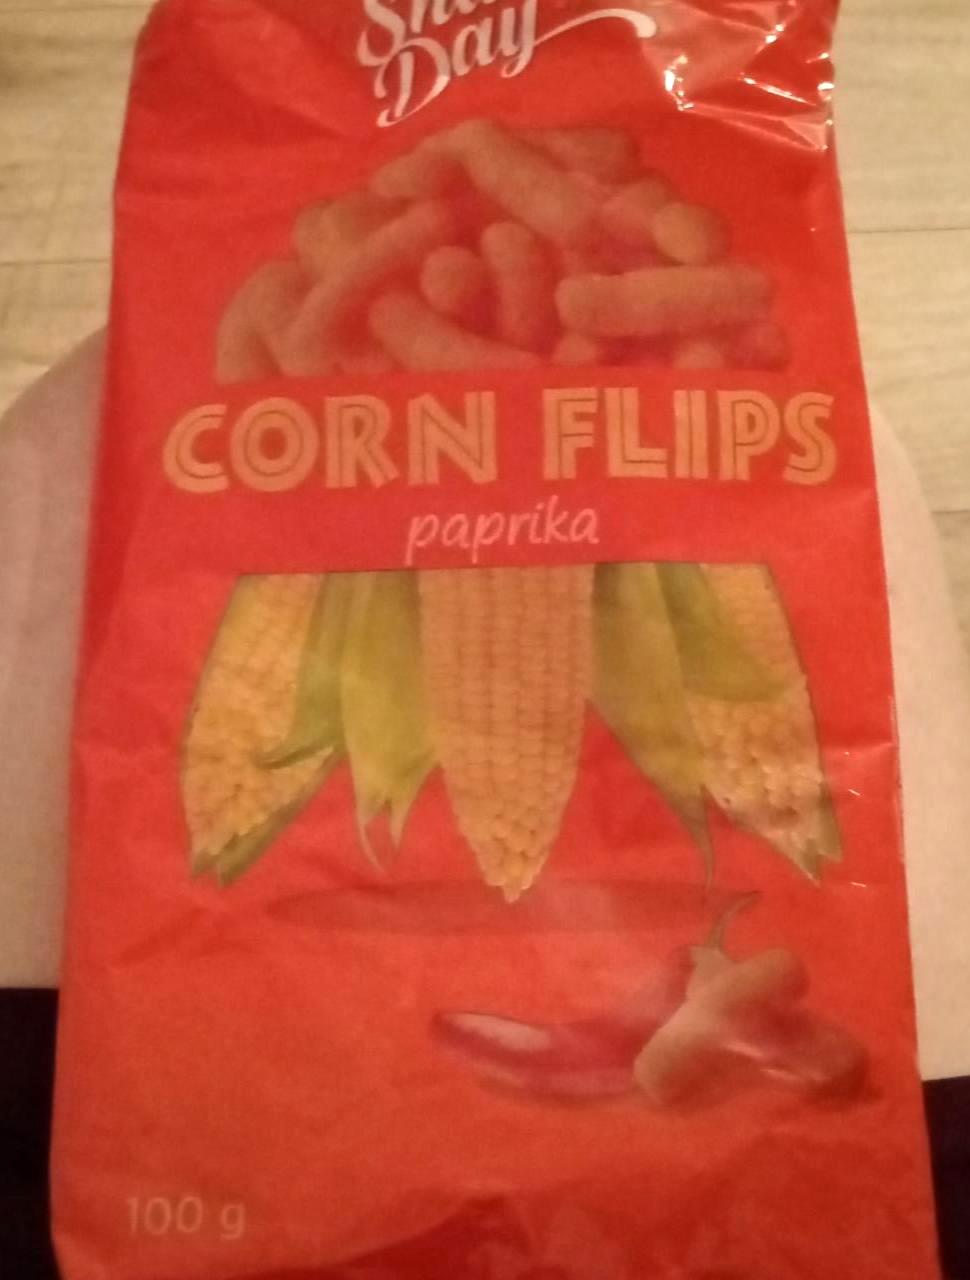 Képek - Corn flips paprikás Snack day